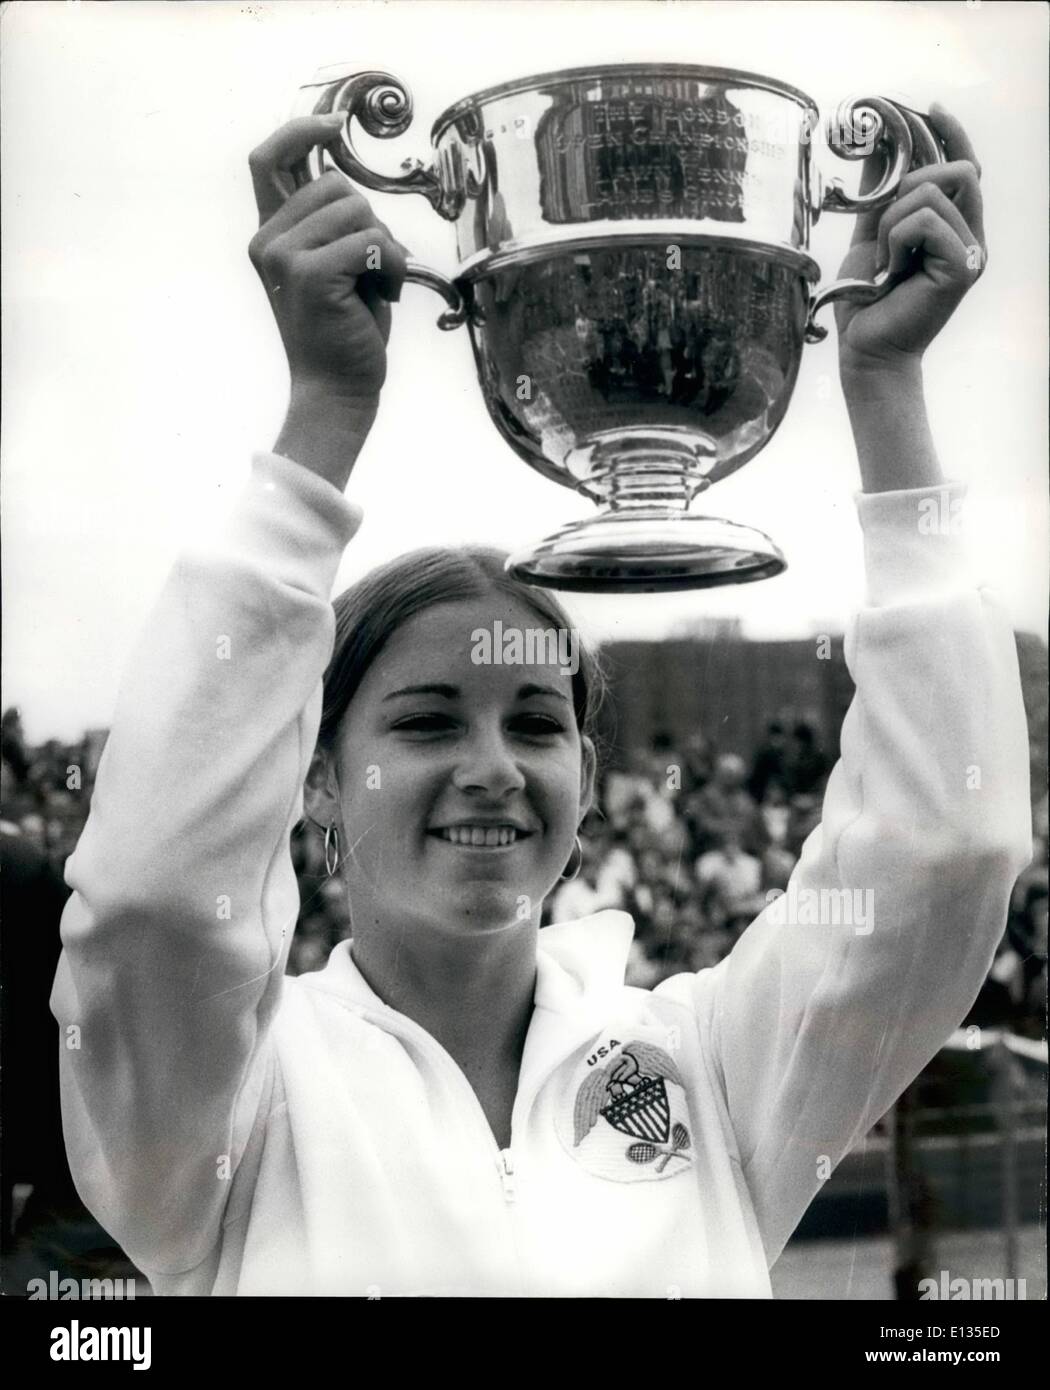 28. Februar 2012 - CHRIS EVERT (USA) gewinnt der Frauen SINGLES Titel IN THE ROTHMANS LONDON GRASS COURT CHAMPIONSHIPS CHRIS EVERT (USA), der Amerikaner fragen sich Tennis-Star gewann das Damen-Einzel-Finale wenn sie MISS K. KRANTZCKE von Australien in die Rothmans London Grass Court Championships in Queens Club, Kensington, heute Foto zeigt schlagen:-MISS CHRIS EVERT abgebildet mit ihrer Trophäe nach sie hatte gewann das Dameneinzel heute Titel , Stockfoto